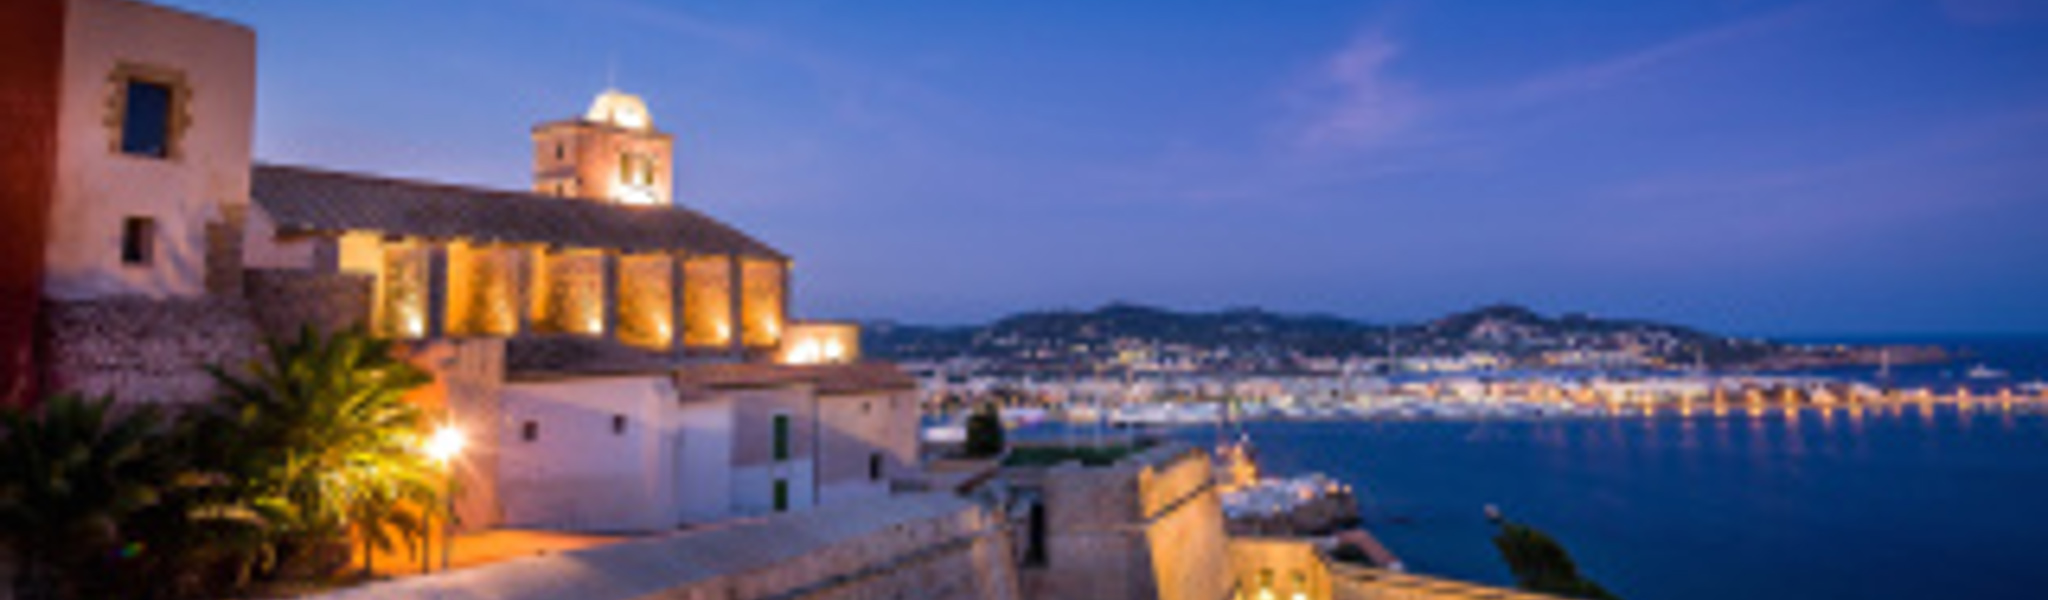 10 razones por las que amamos Ibiza 